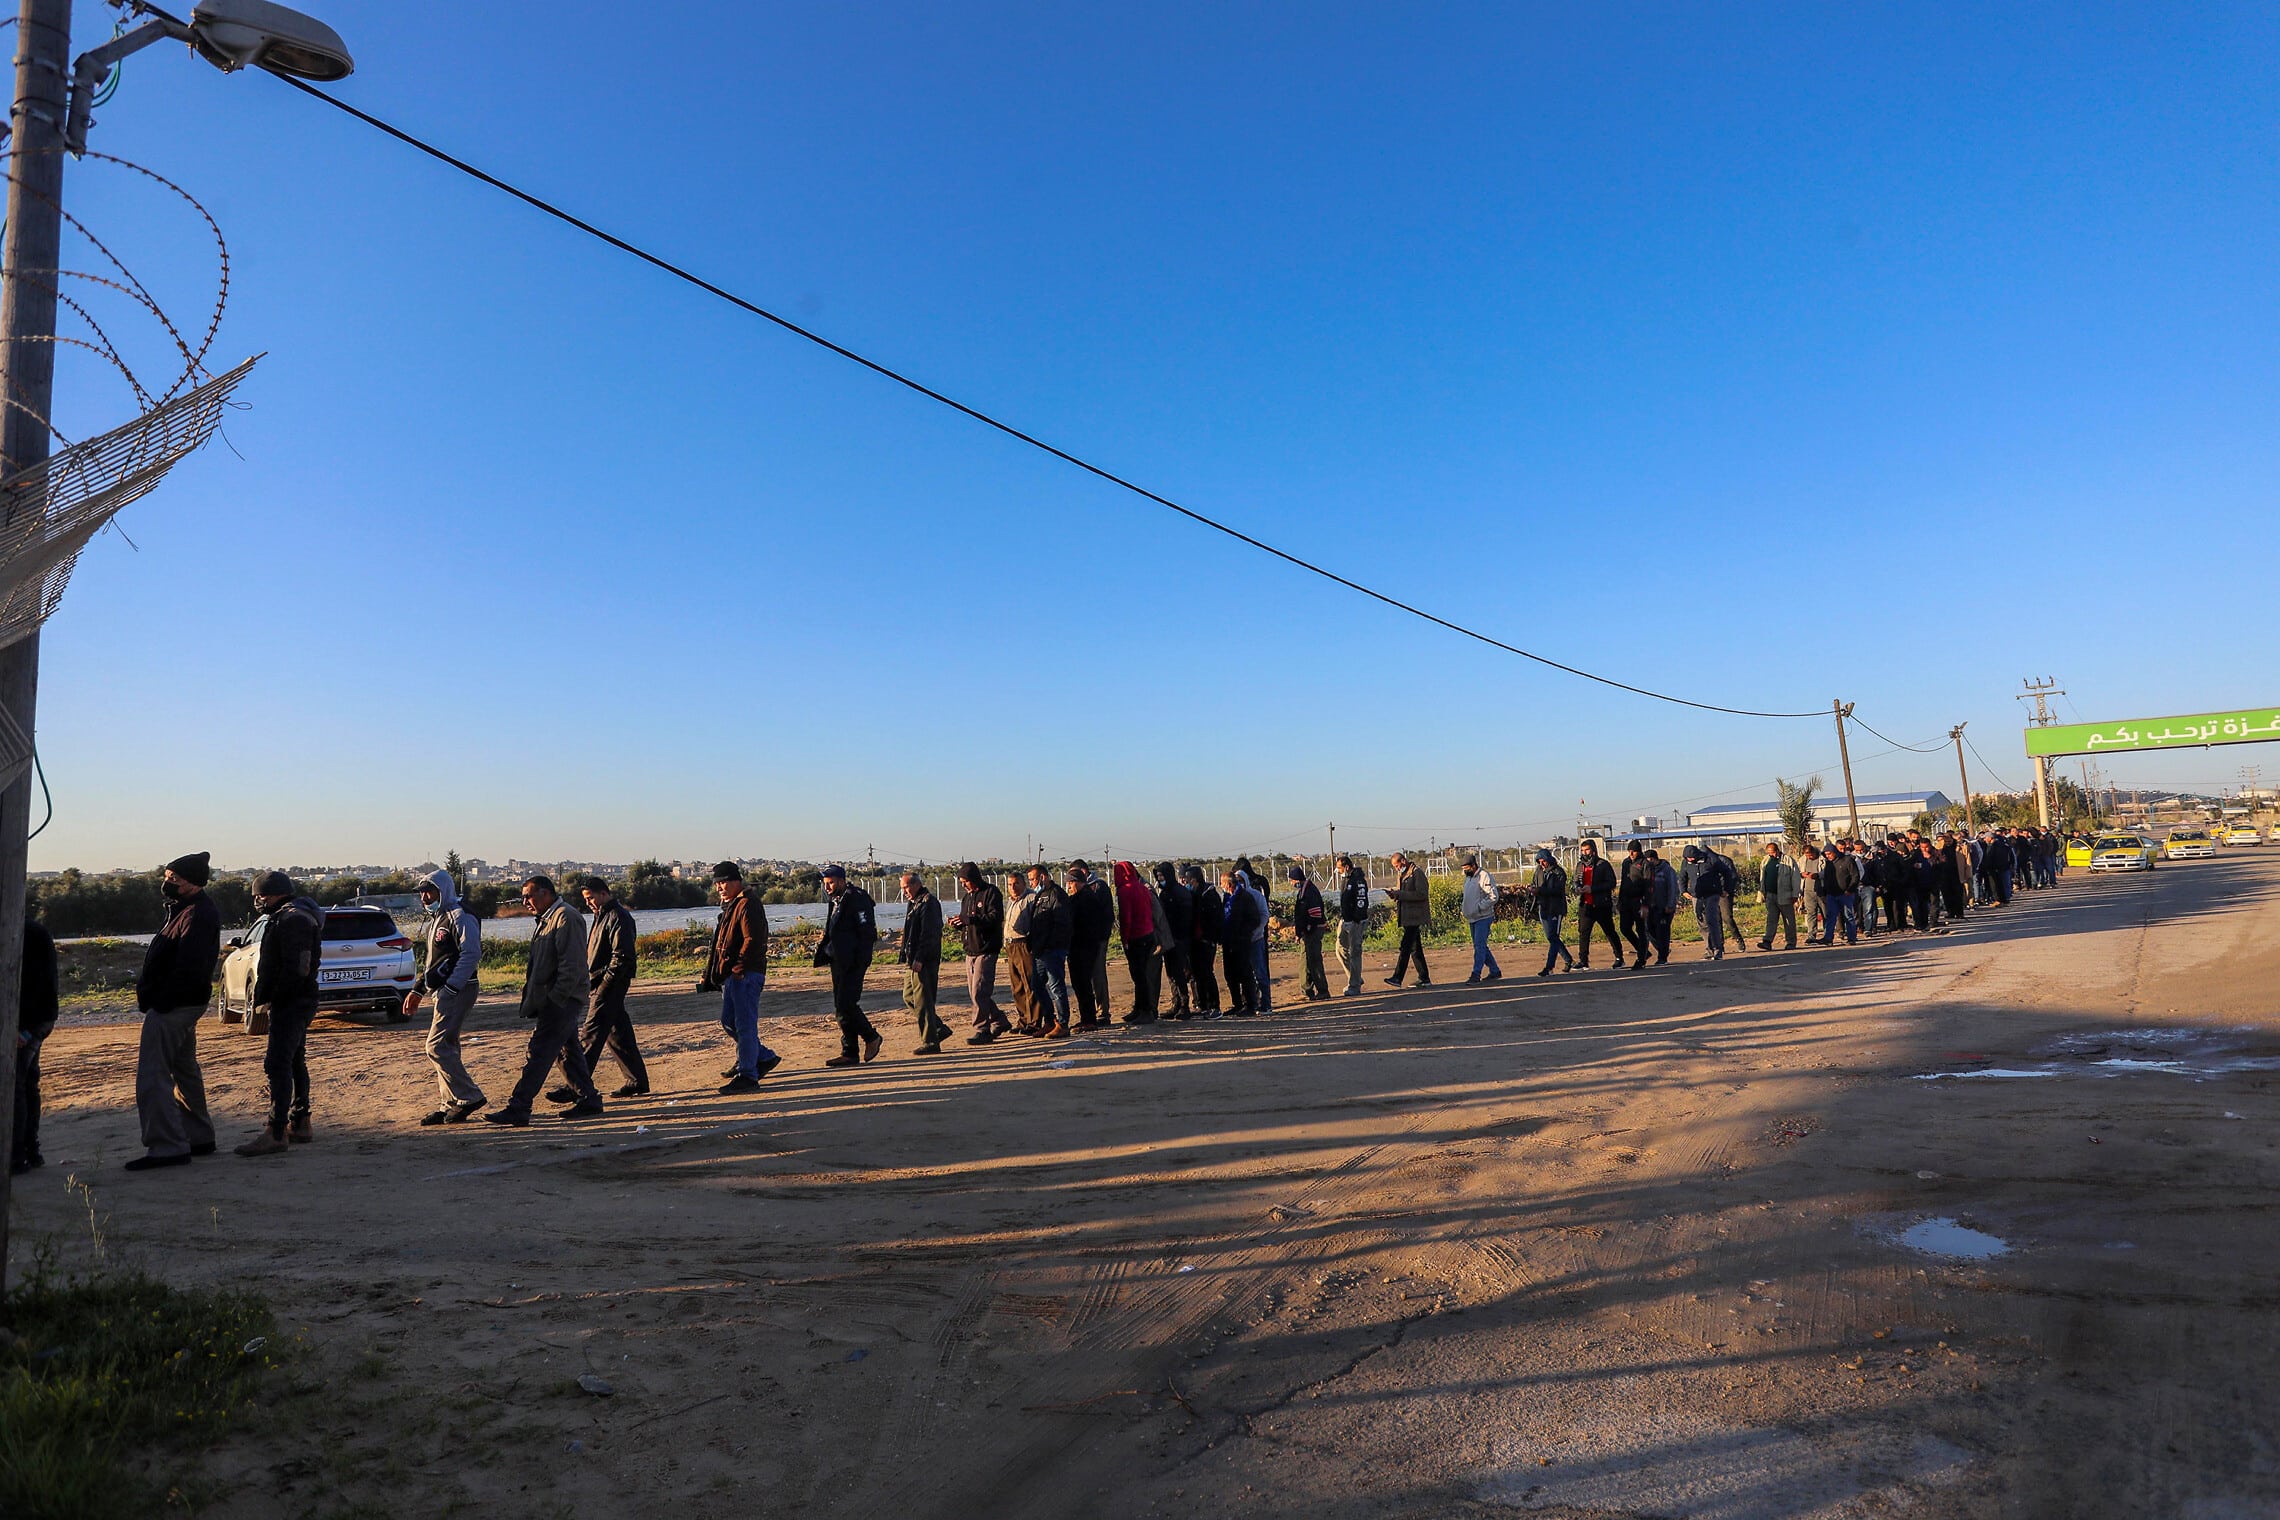 עובדים פלסטינים מעזה עומדים בתור כדי להיכנס לישראל במעבר ארז, 13 במרץ 2022 (צילום: Attia Muhammed/Flash90)